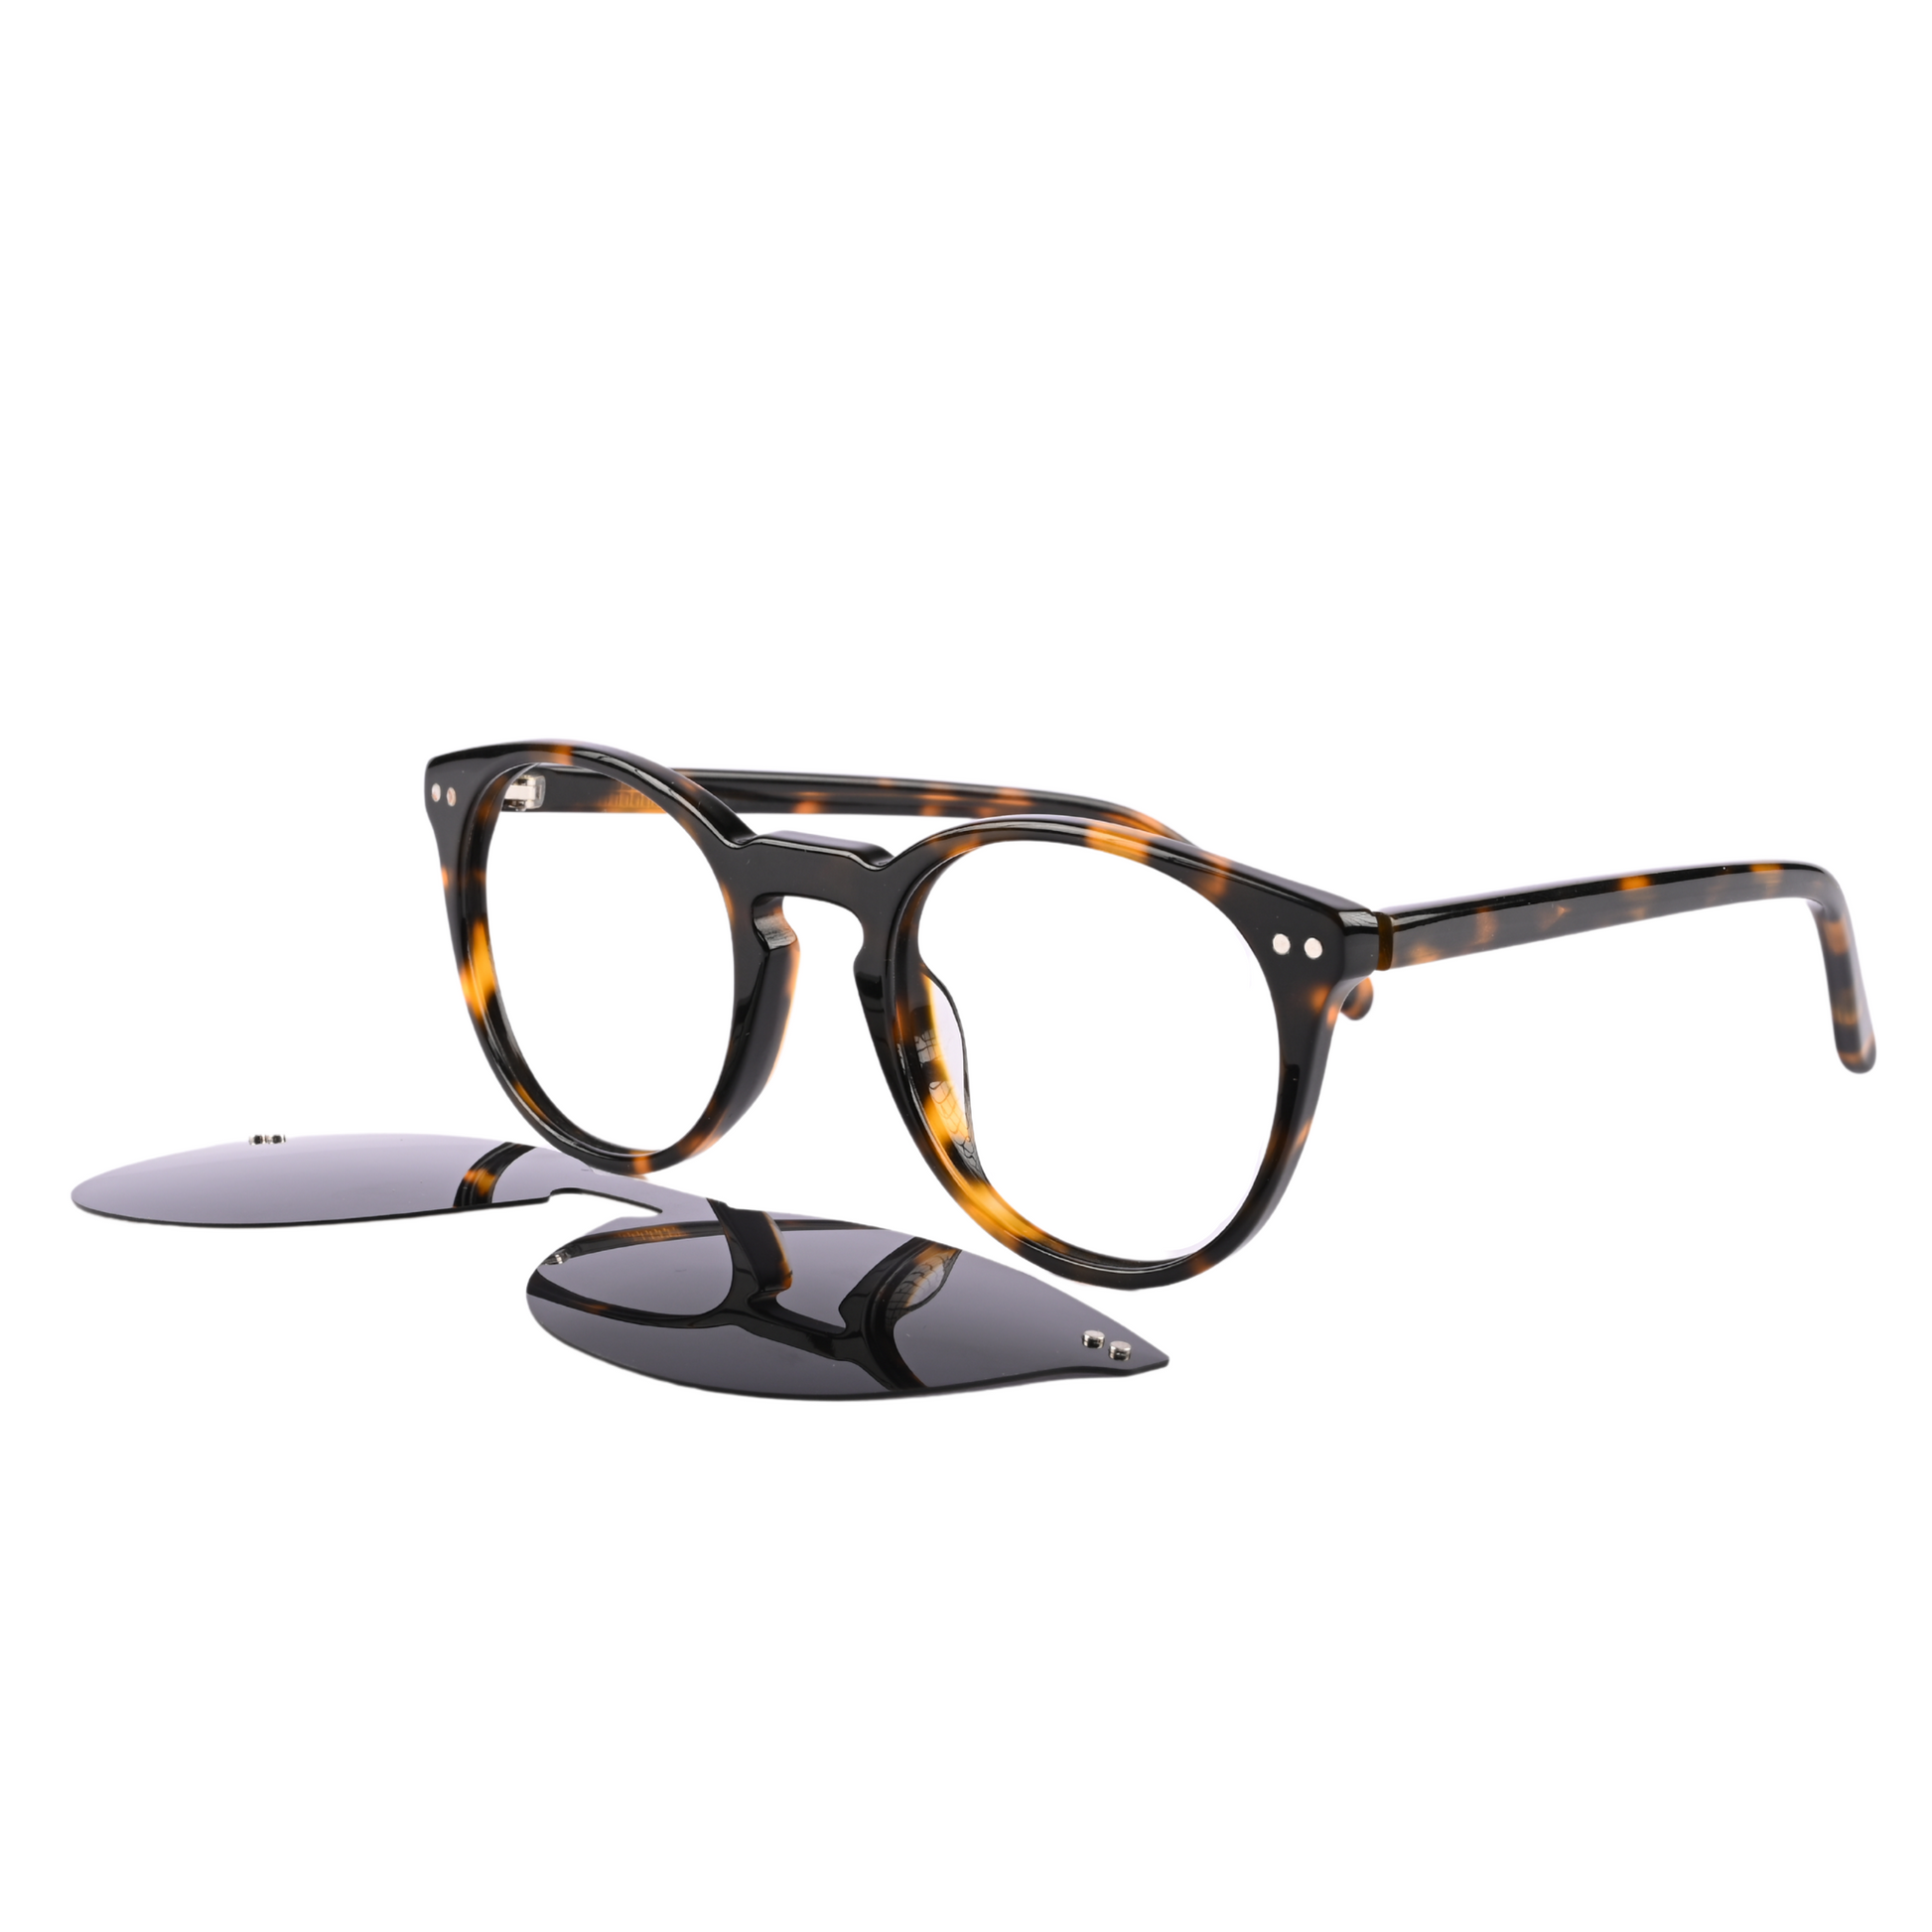 Tortoise Cat Eye Magnetic Sunglasses Polarized Clip On Eyeglass Frames Women